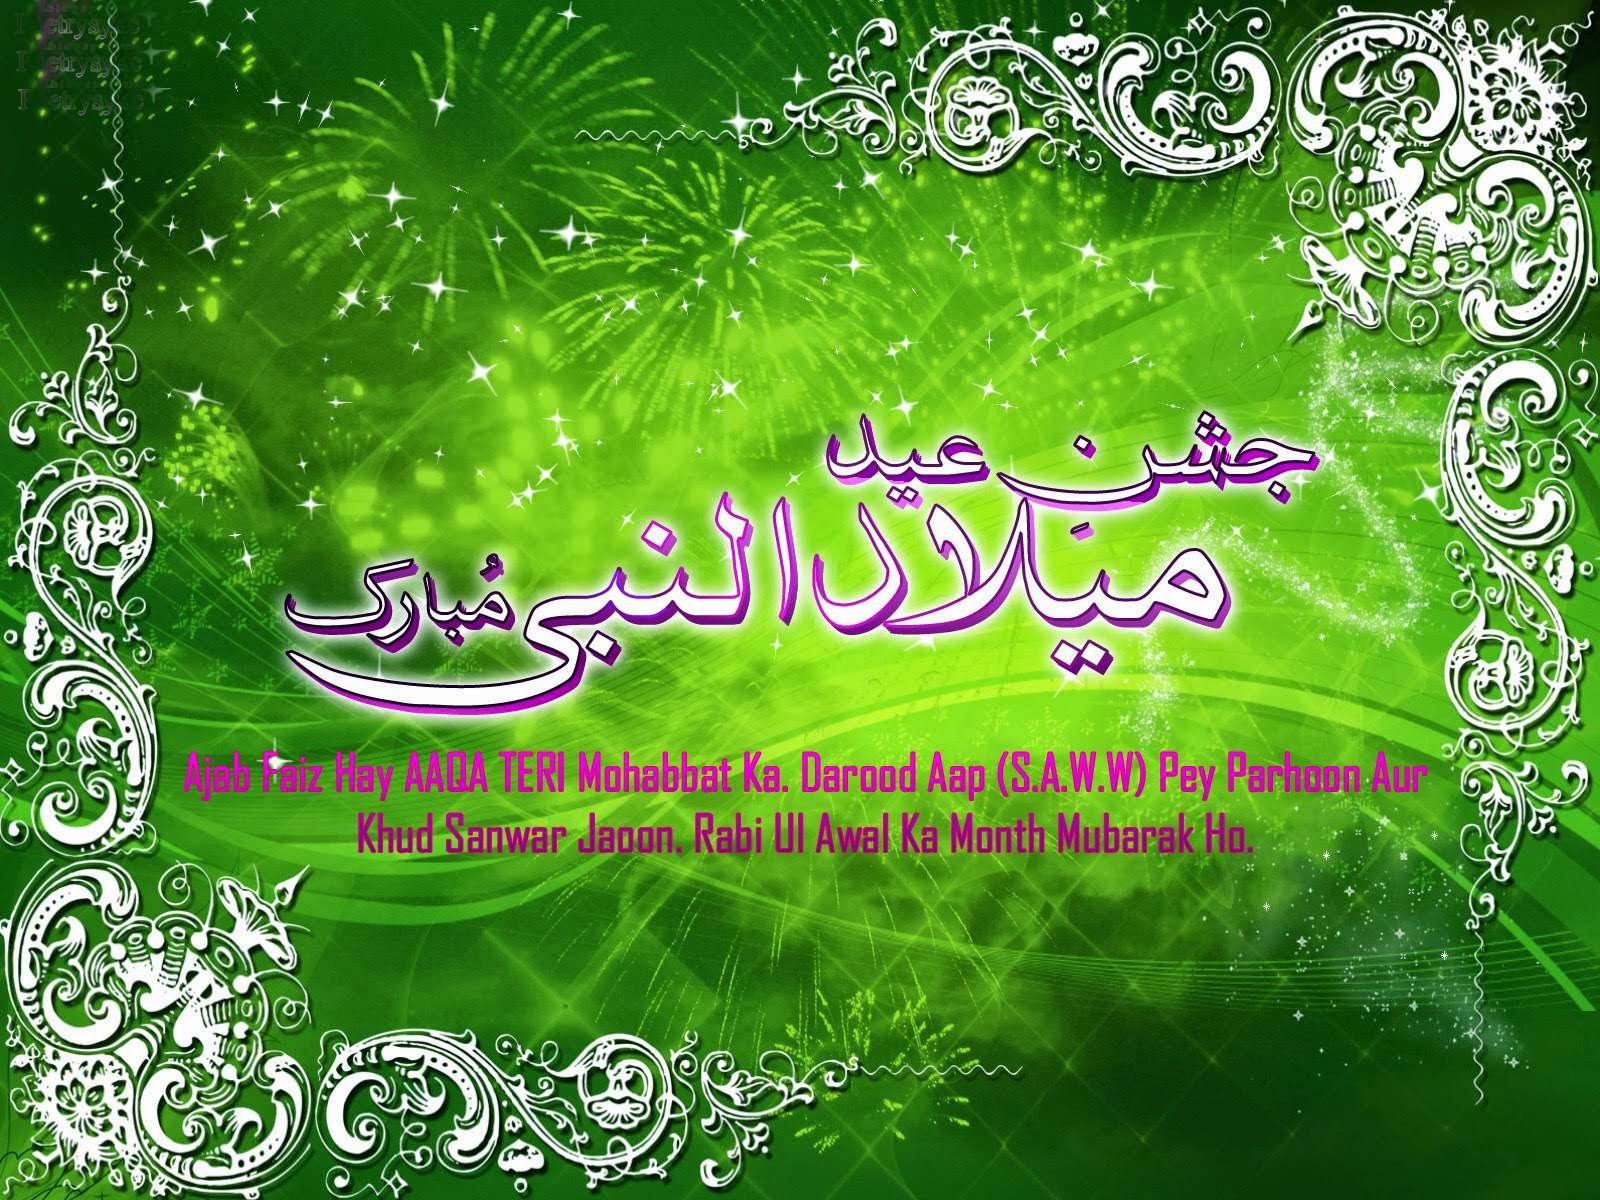 Eid Milad Un Nabi Mubarak 2016 HD Wallpaper Free Download Wish